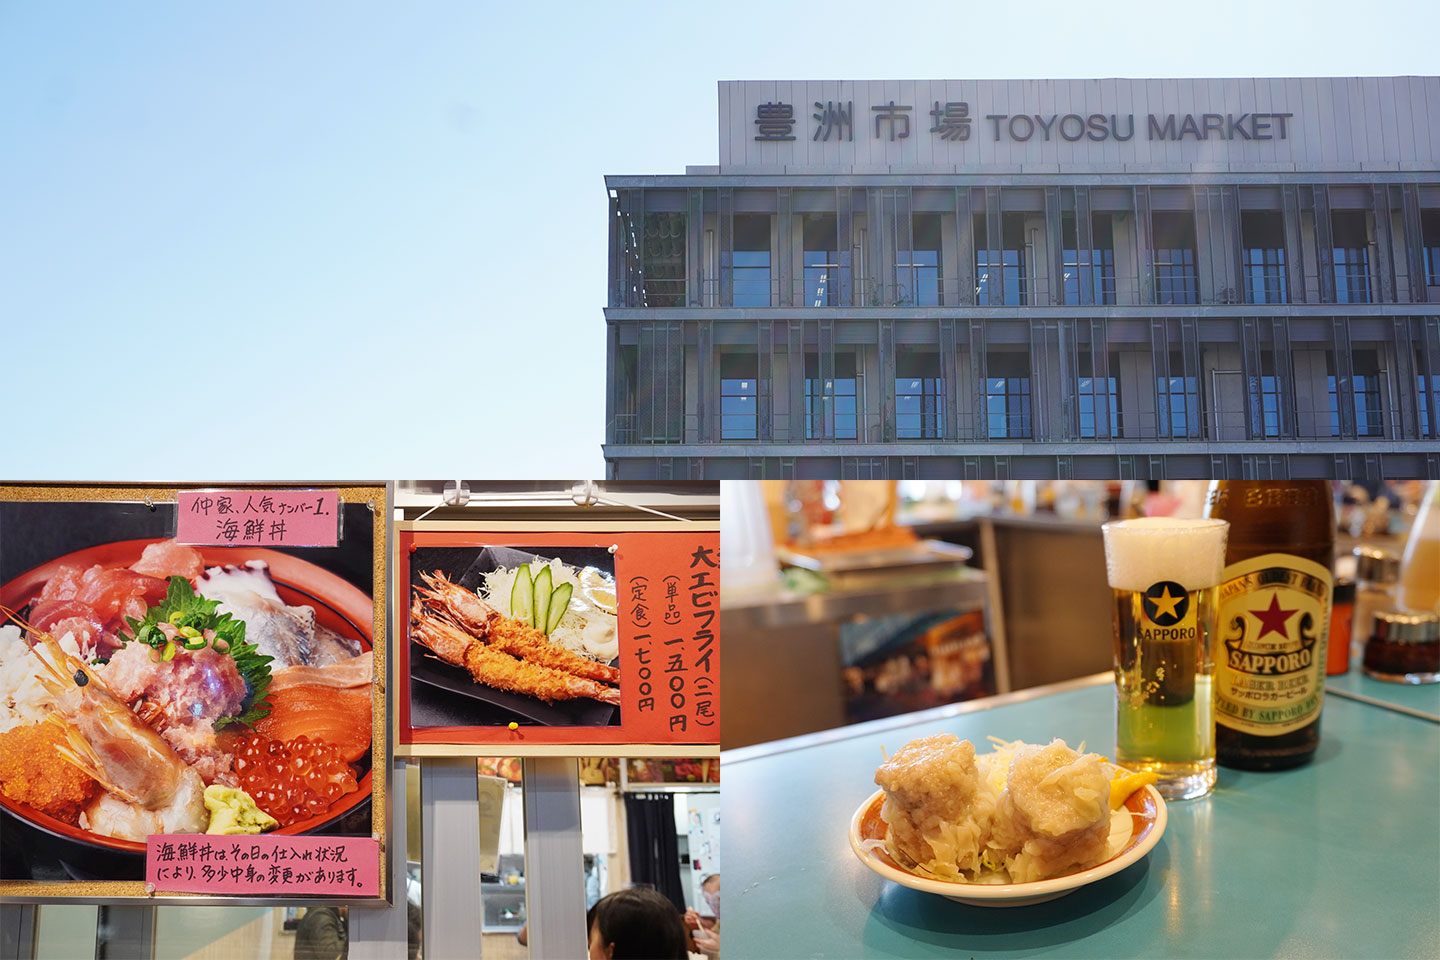 [Toyosu Gourmet] Tokyo's Kitchen! Fifteen Popular Restaurants at Toyosu Market, Gathering Place for Food Professionals